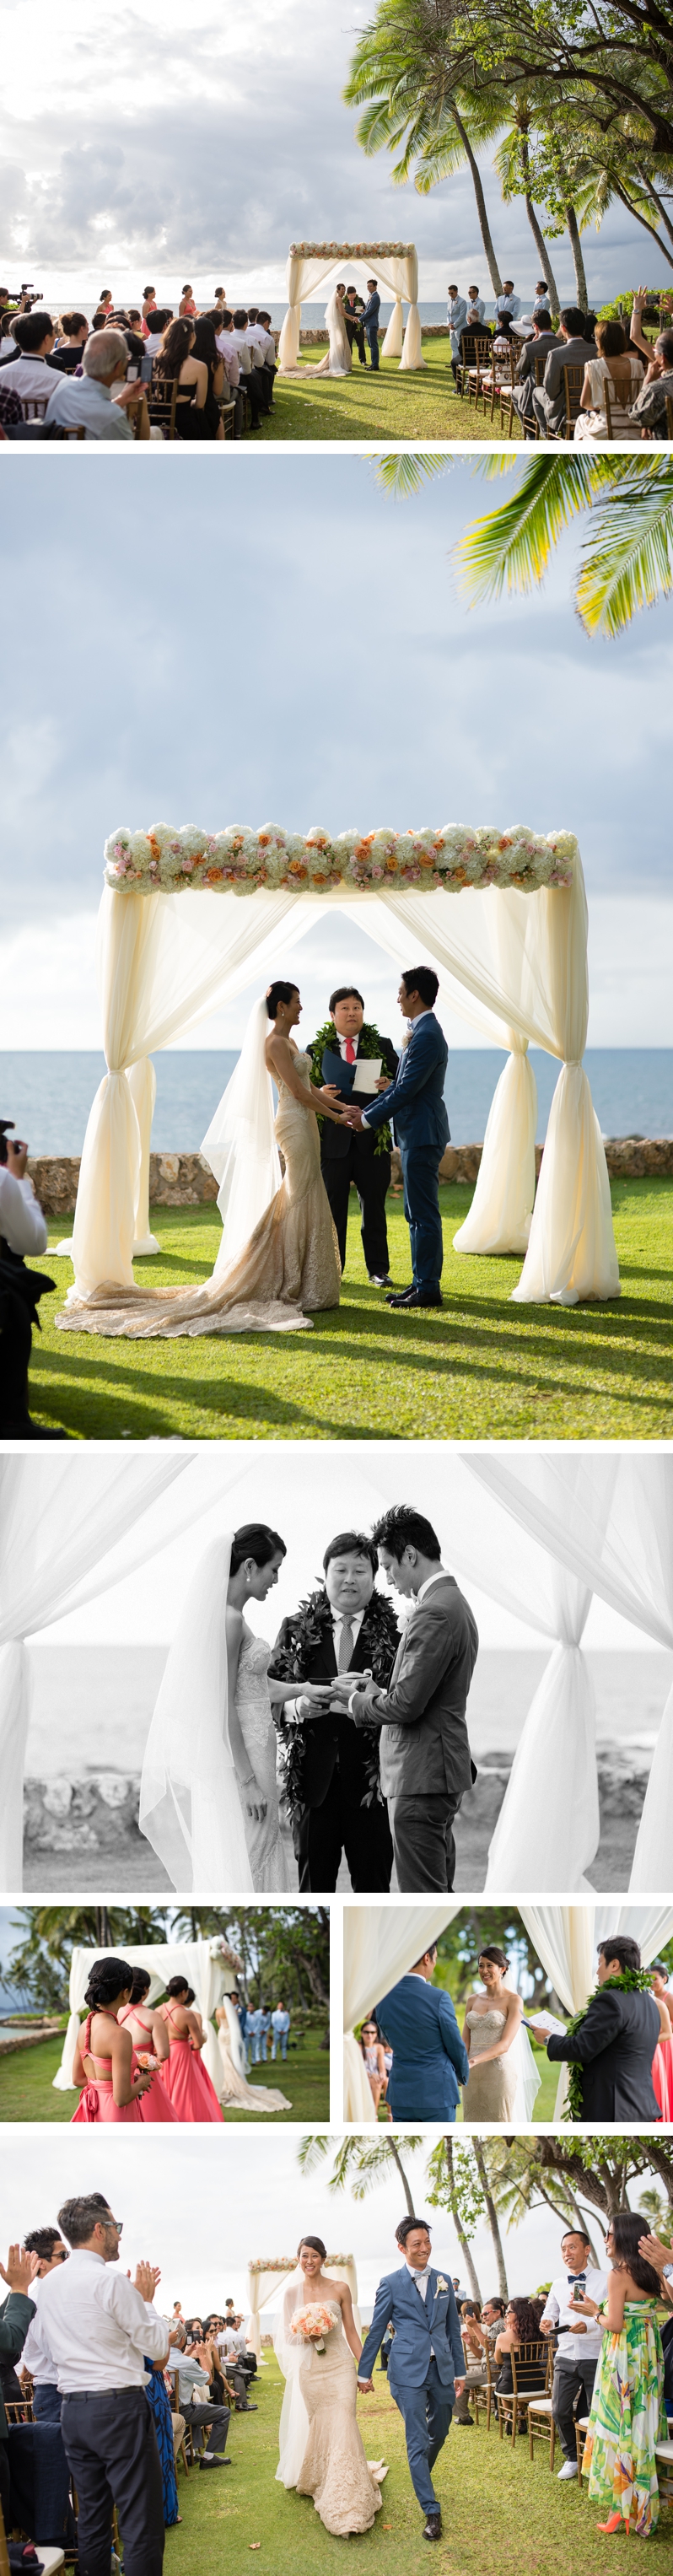 lanikuhonua-wedding-ceremony-02